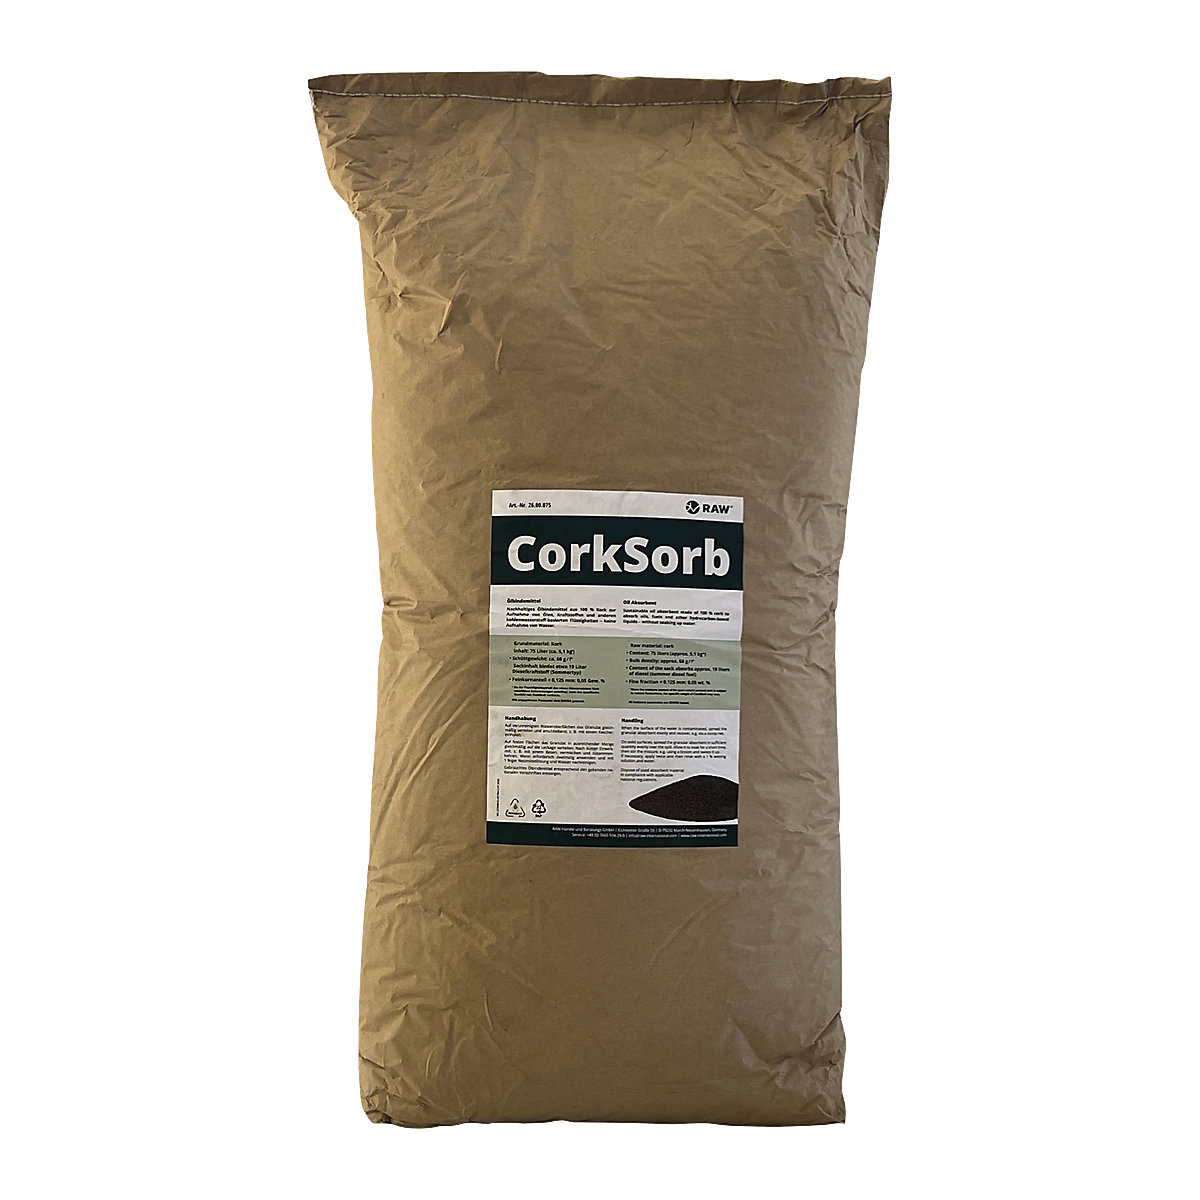 CorkSorb oil binding granulate